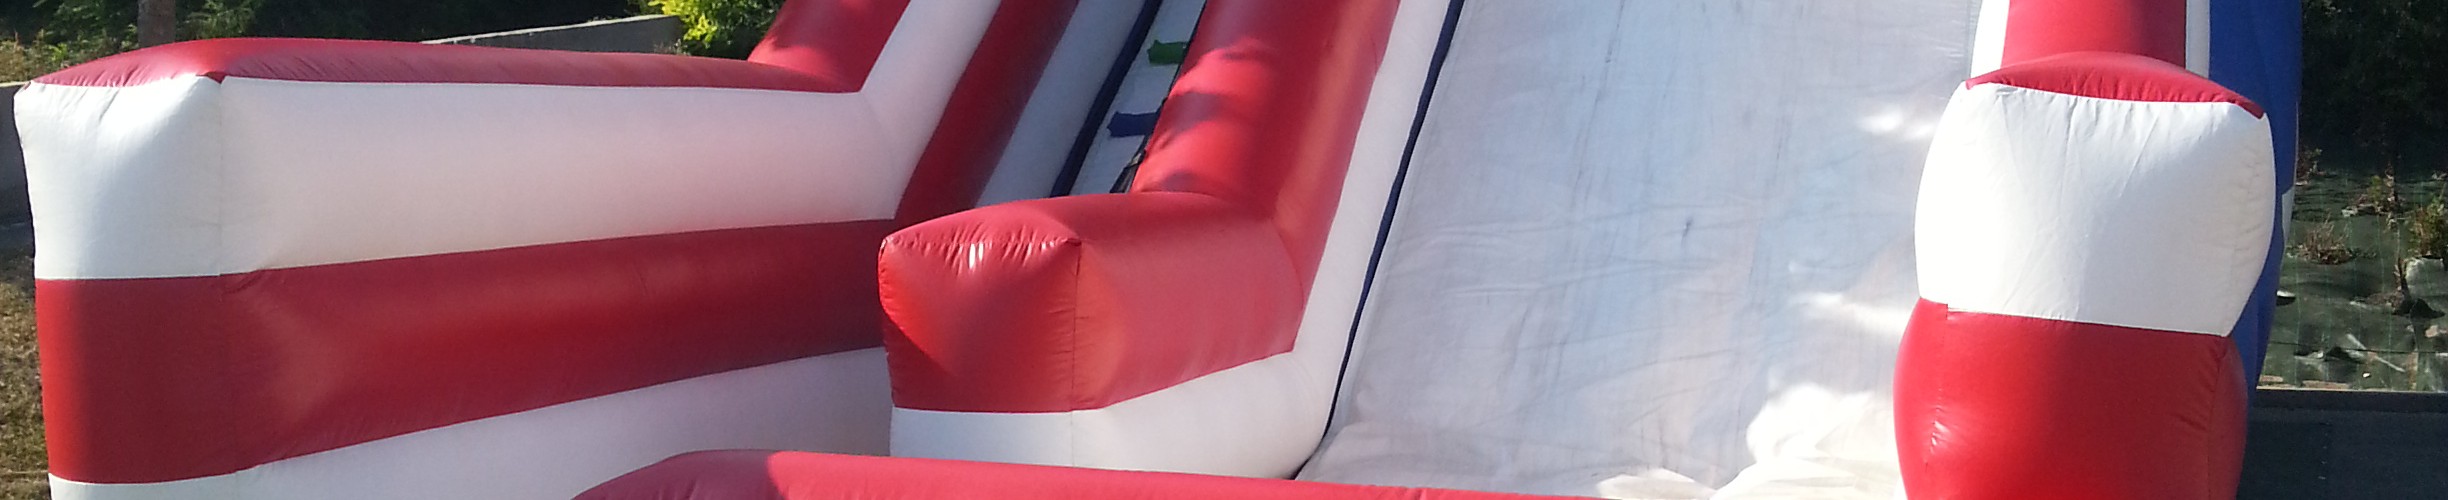 Structure gonflable de jeu en plein air : les enfants glissent dans le toboggan